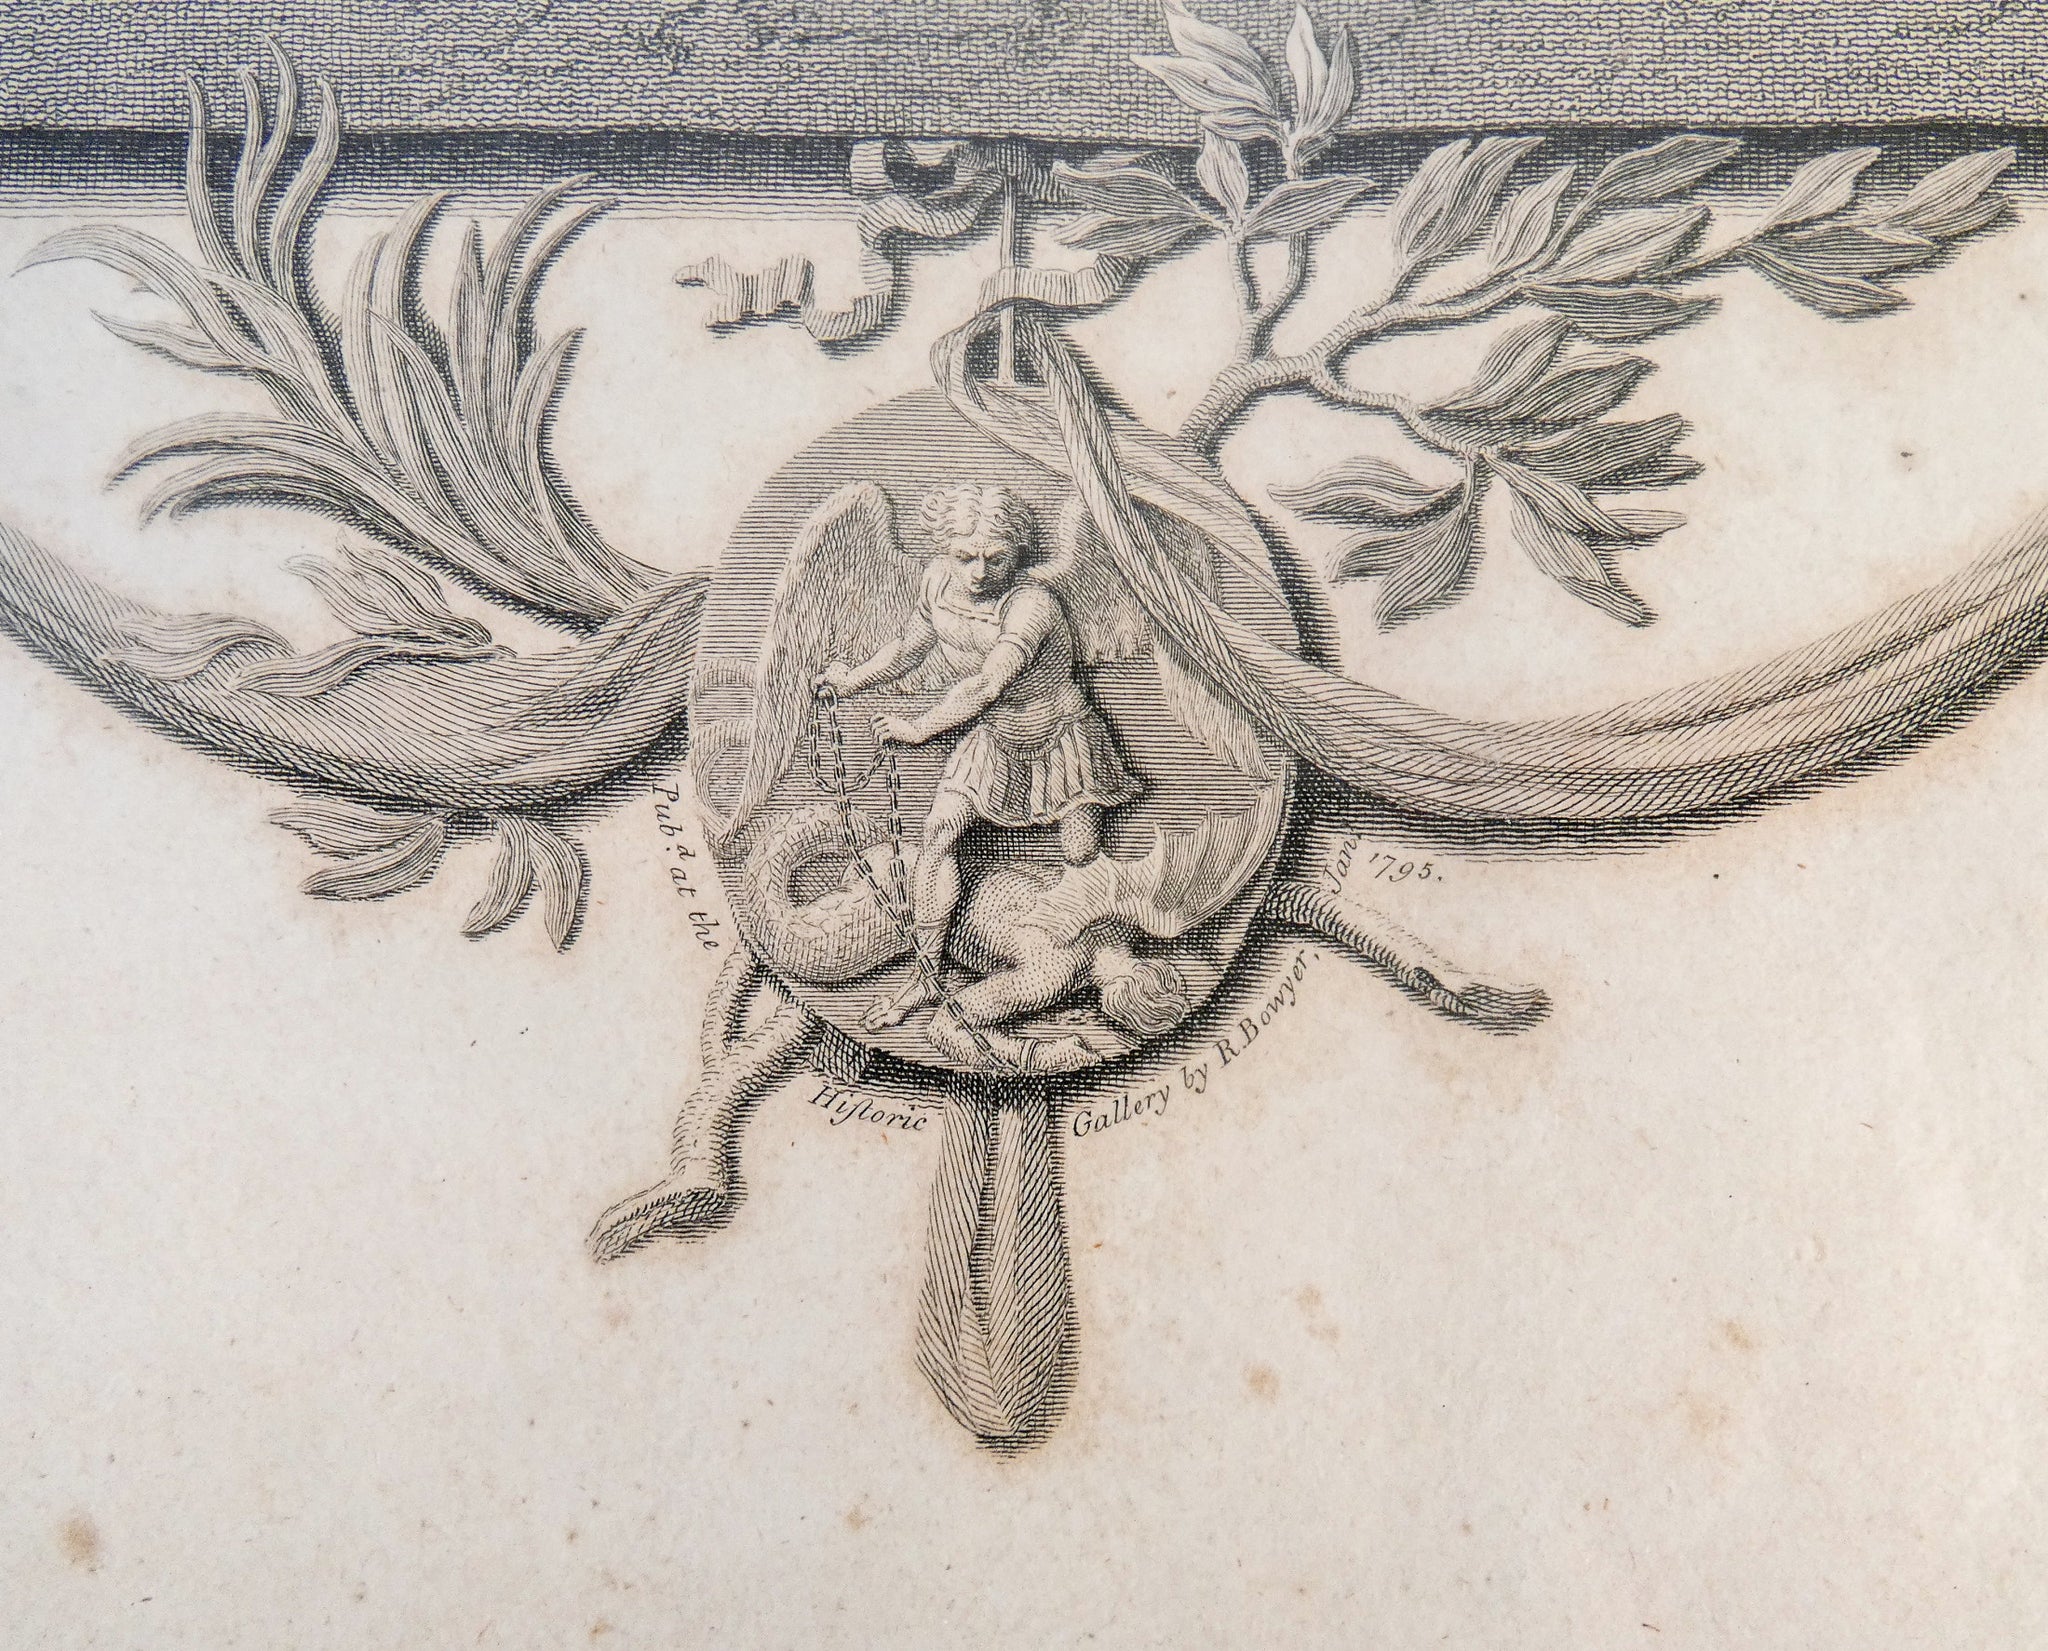 incisione 1795 robert bowyer historic gallery riformatori protestanti antica